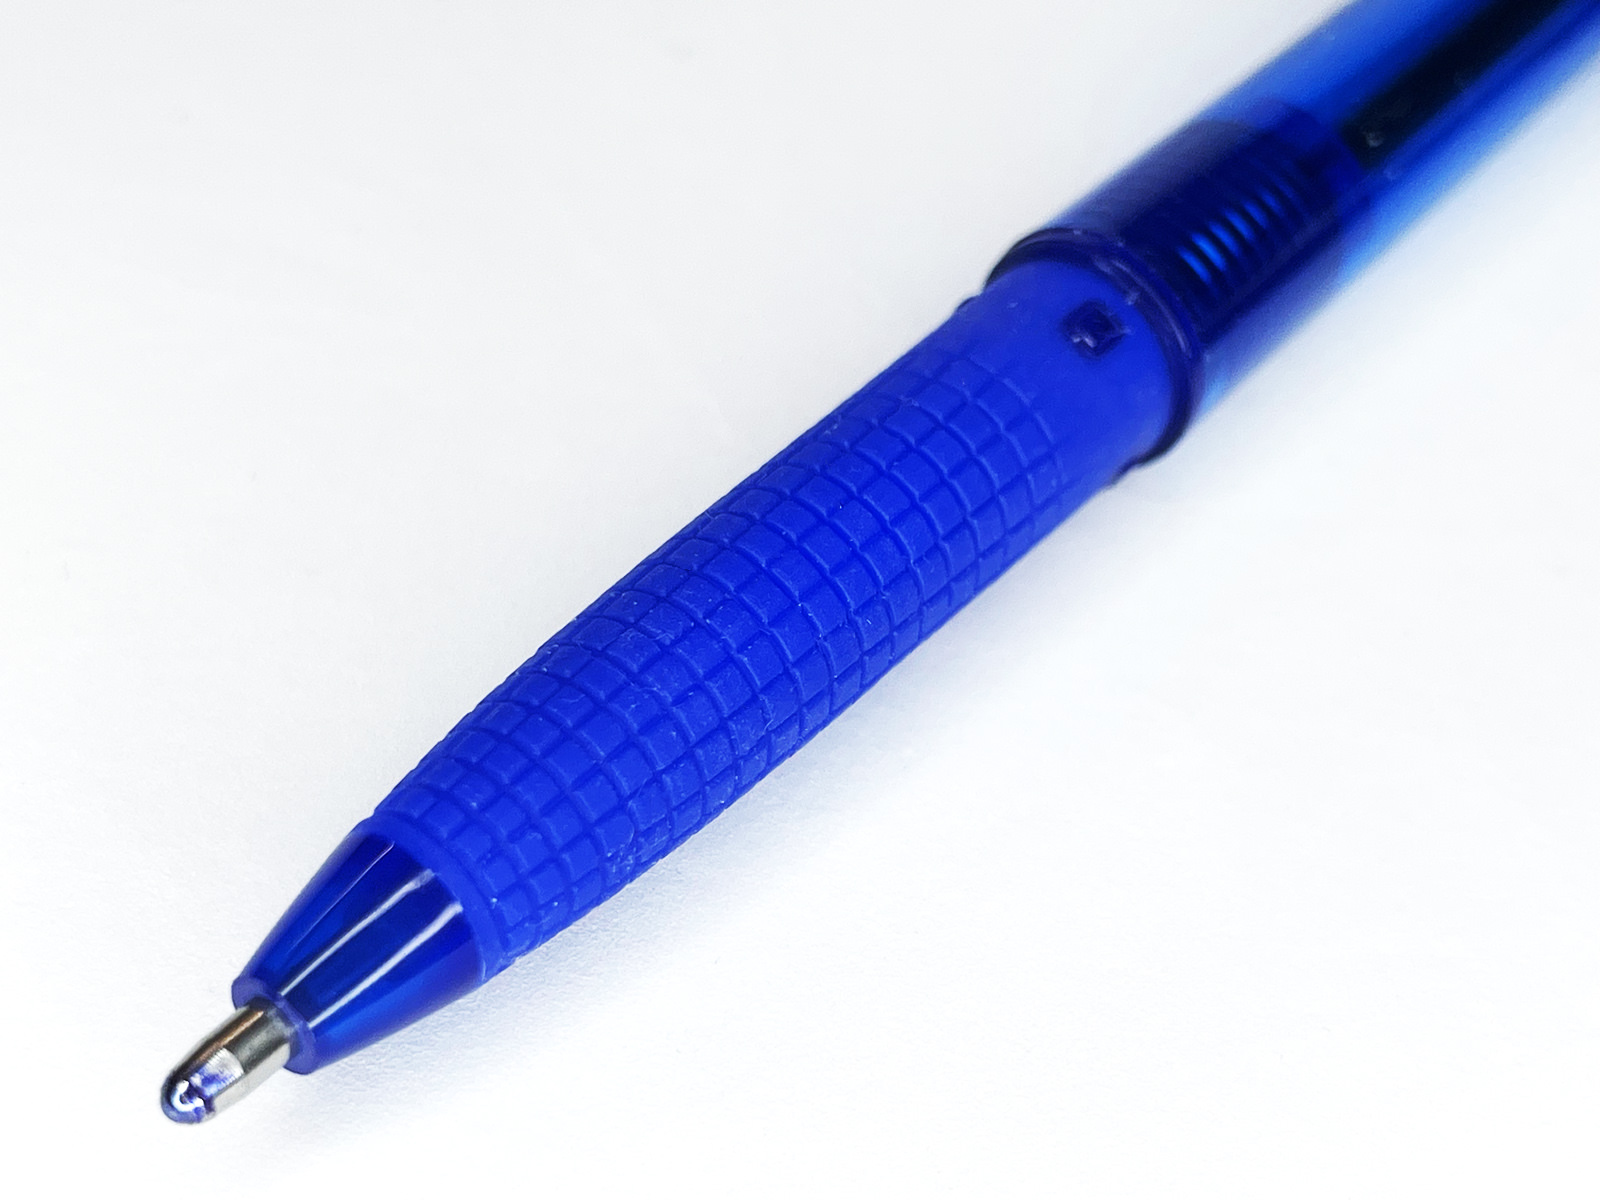 「パイロット スーパーグリップG キャップ式」超極太 1.6mm ブルー グリップ～ペン先